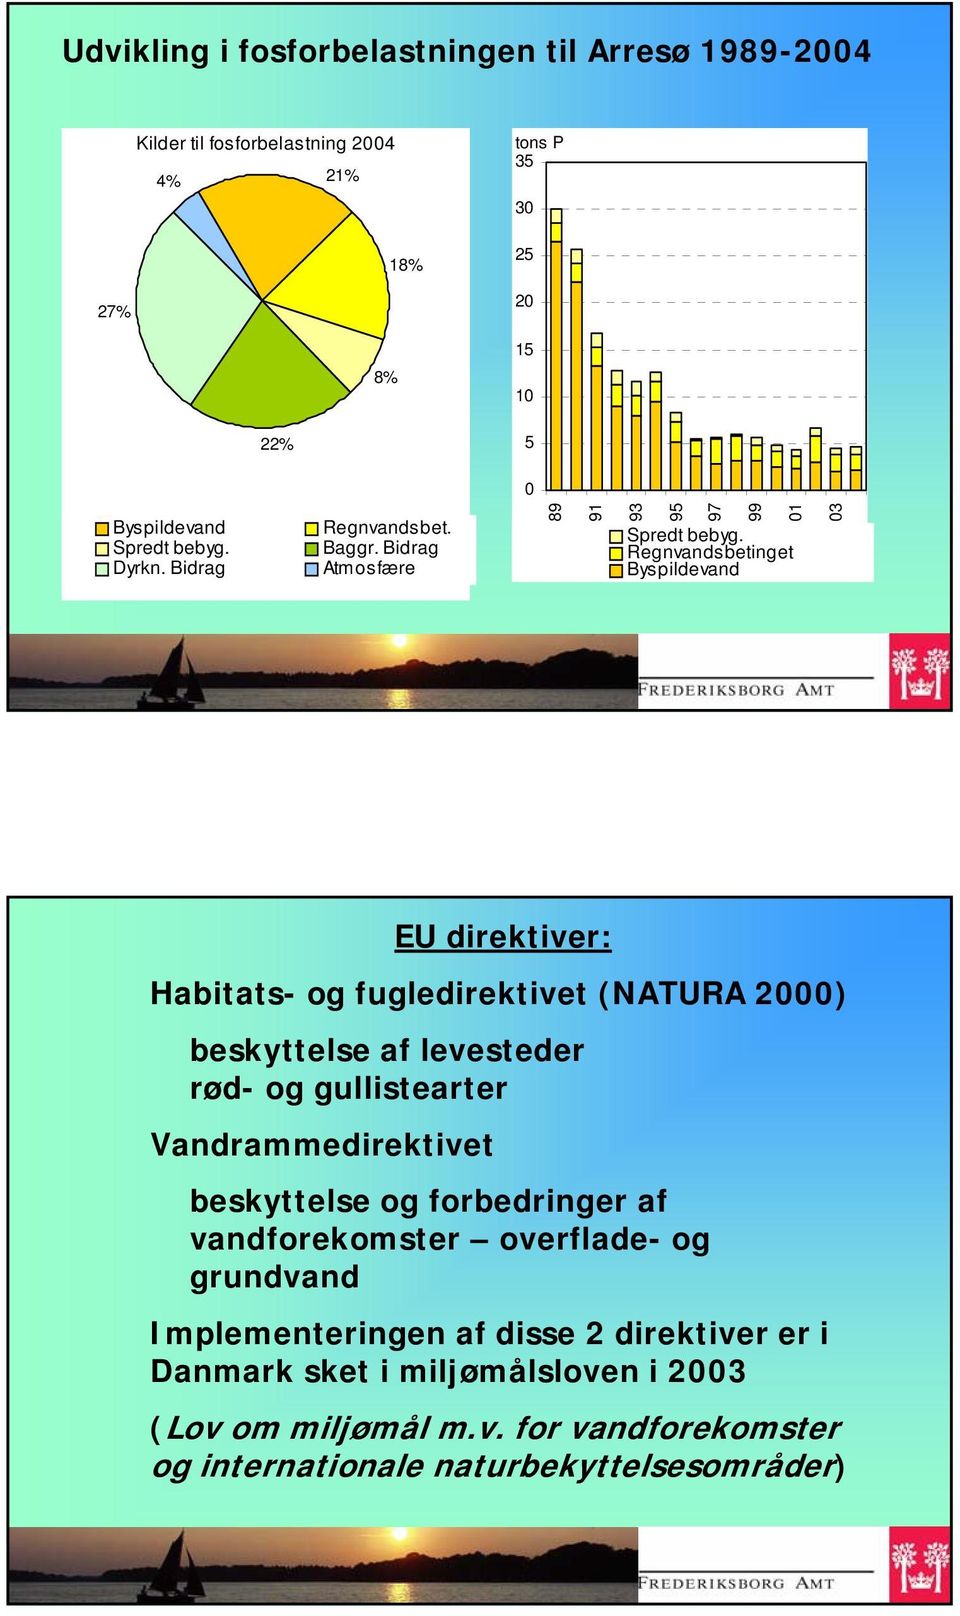 Regnvandsbetinget Byspildevand 03 EU direktiver: Habitats- og fugledirektivet (NATURA 2000) beskyttelse af levesteder rød- og gullistearter Vandrammedirektivet